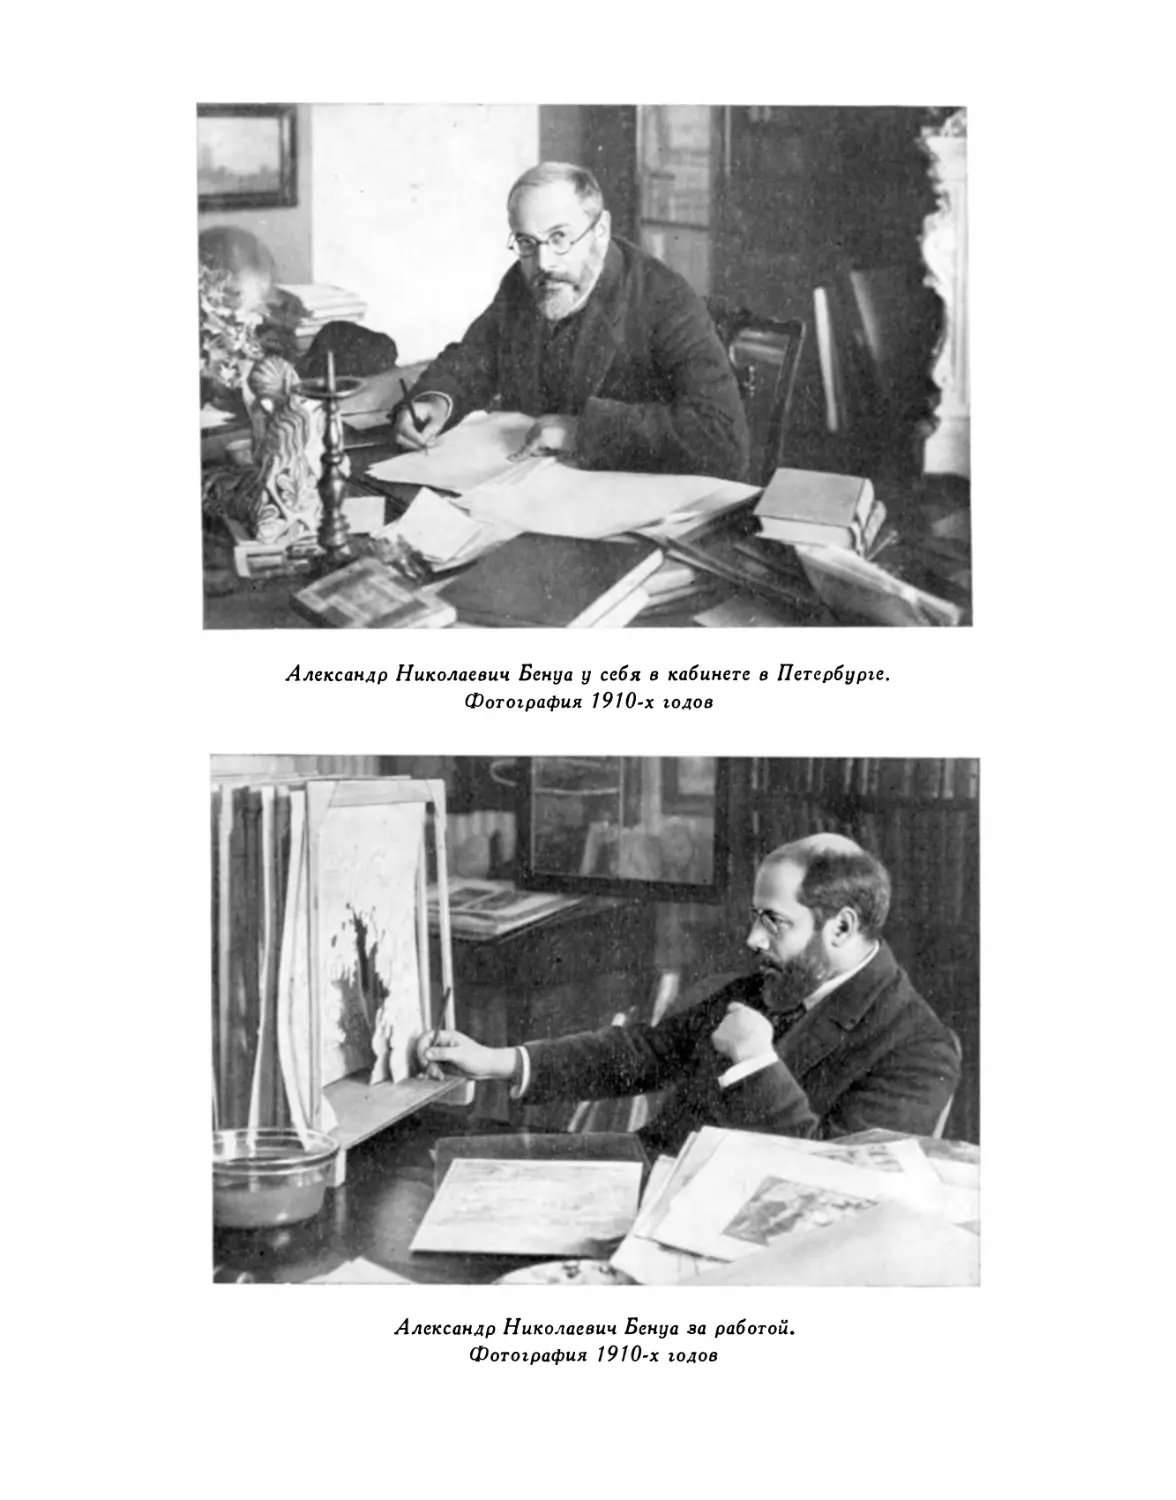 Александр Николаевич Бенуа у себя в кабинете в Петербурге; Александр Николаевич Бенуа за работой. Фотографии 1910-х годов